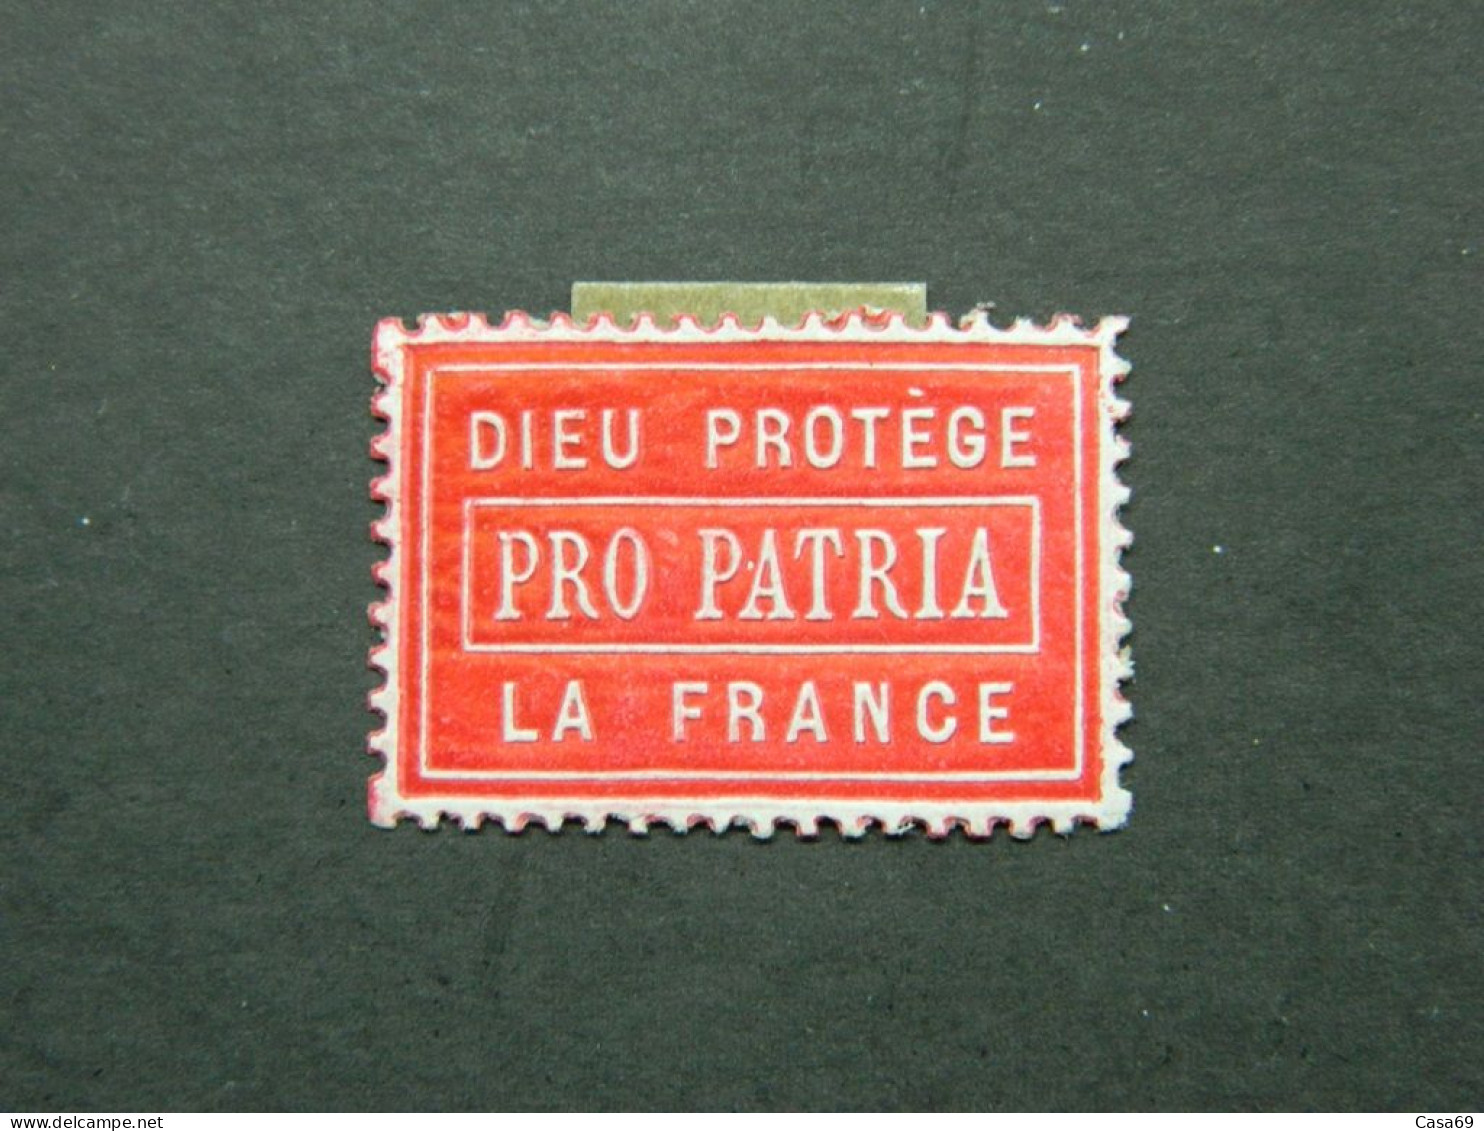 Vignette Militaire De Propagande En Relief Pro Patria Dieu Protège La France - Militärmarken